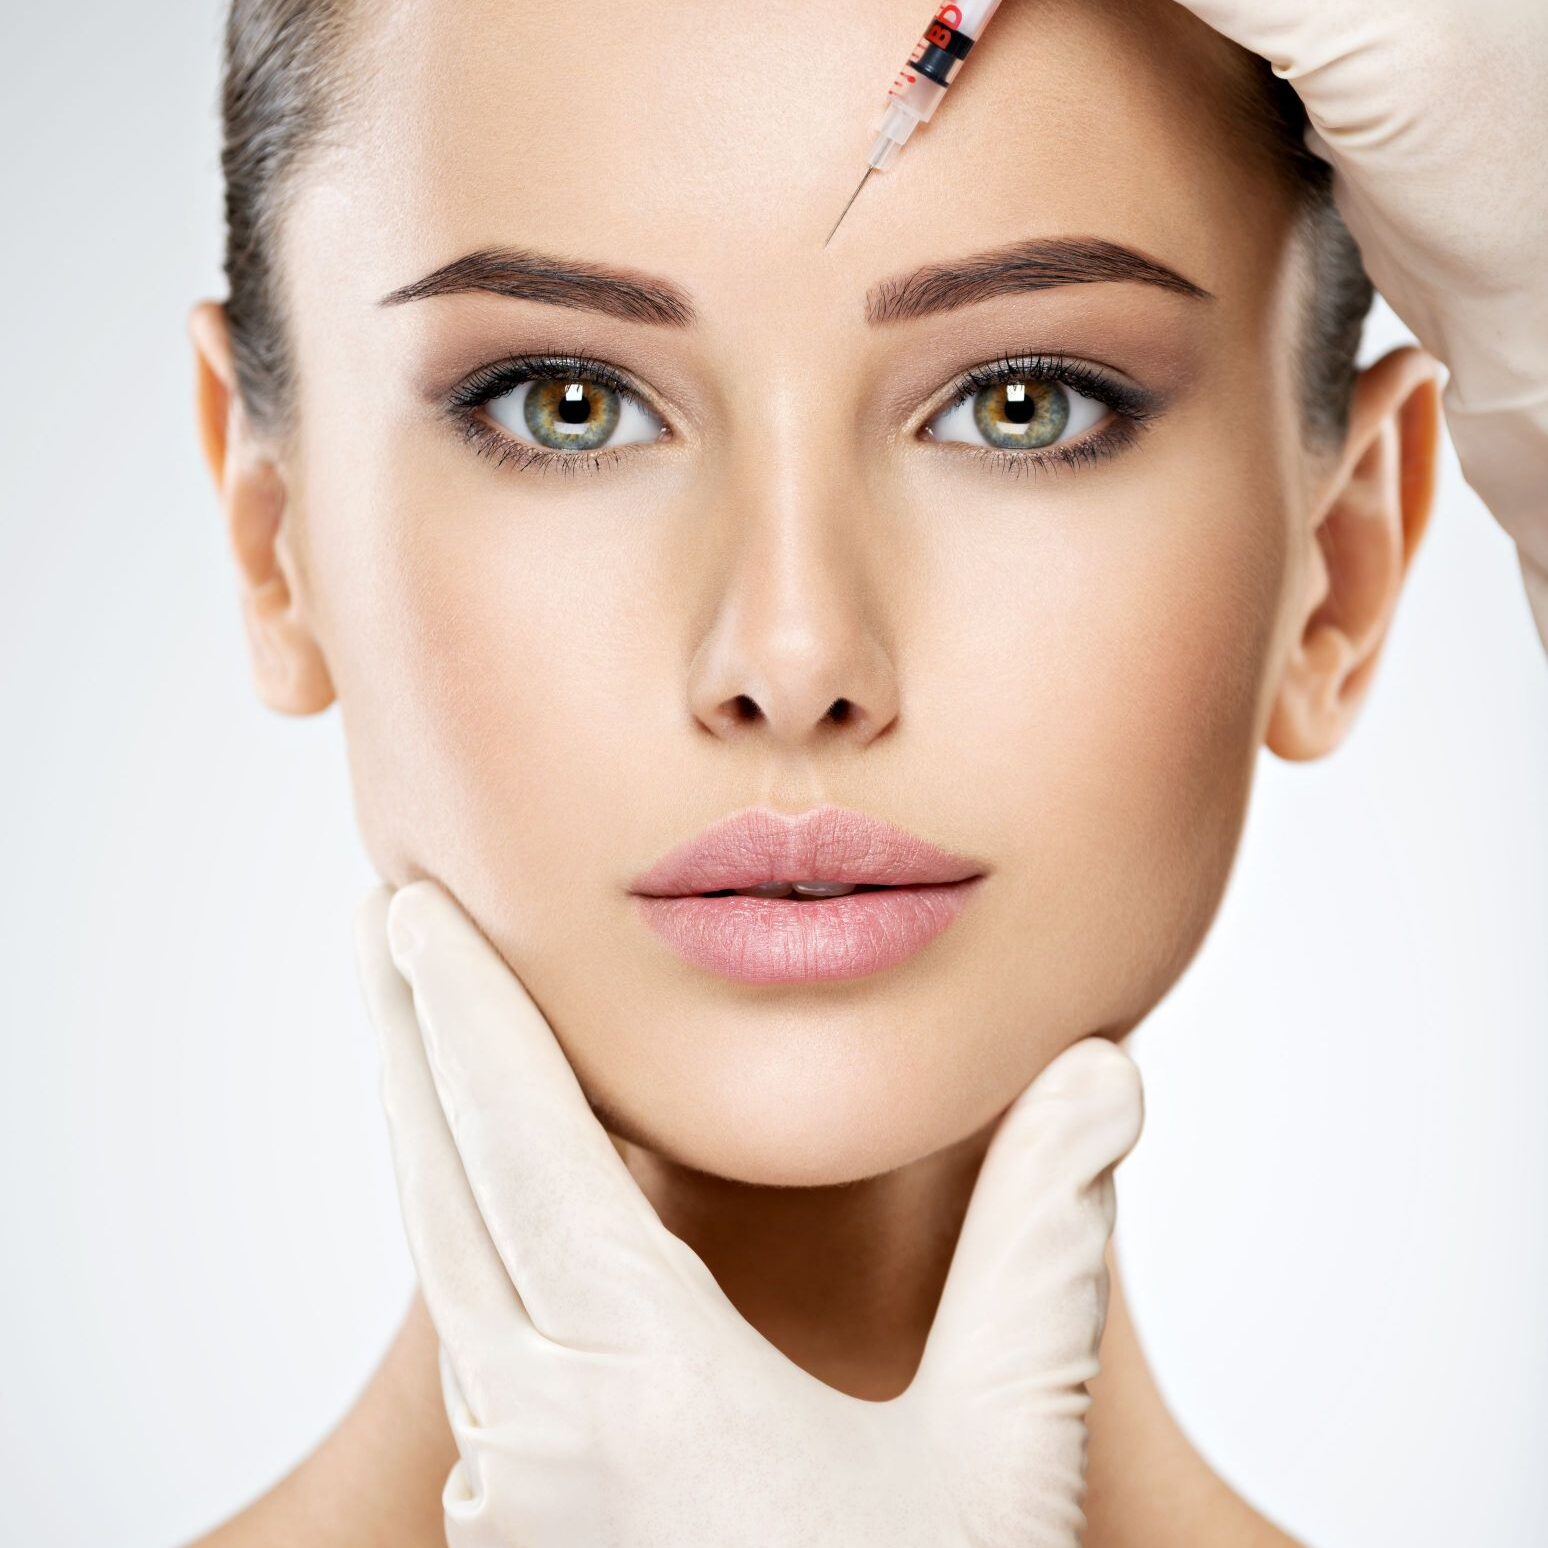 woman-getting-cosmetic-botox-injection-in-forehead-2021-08-29-09-54-09-utc